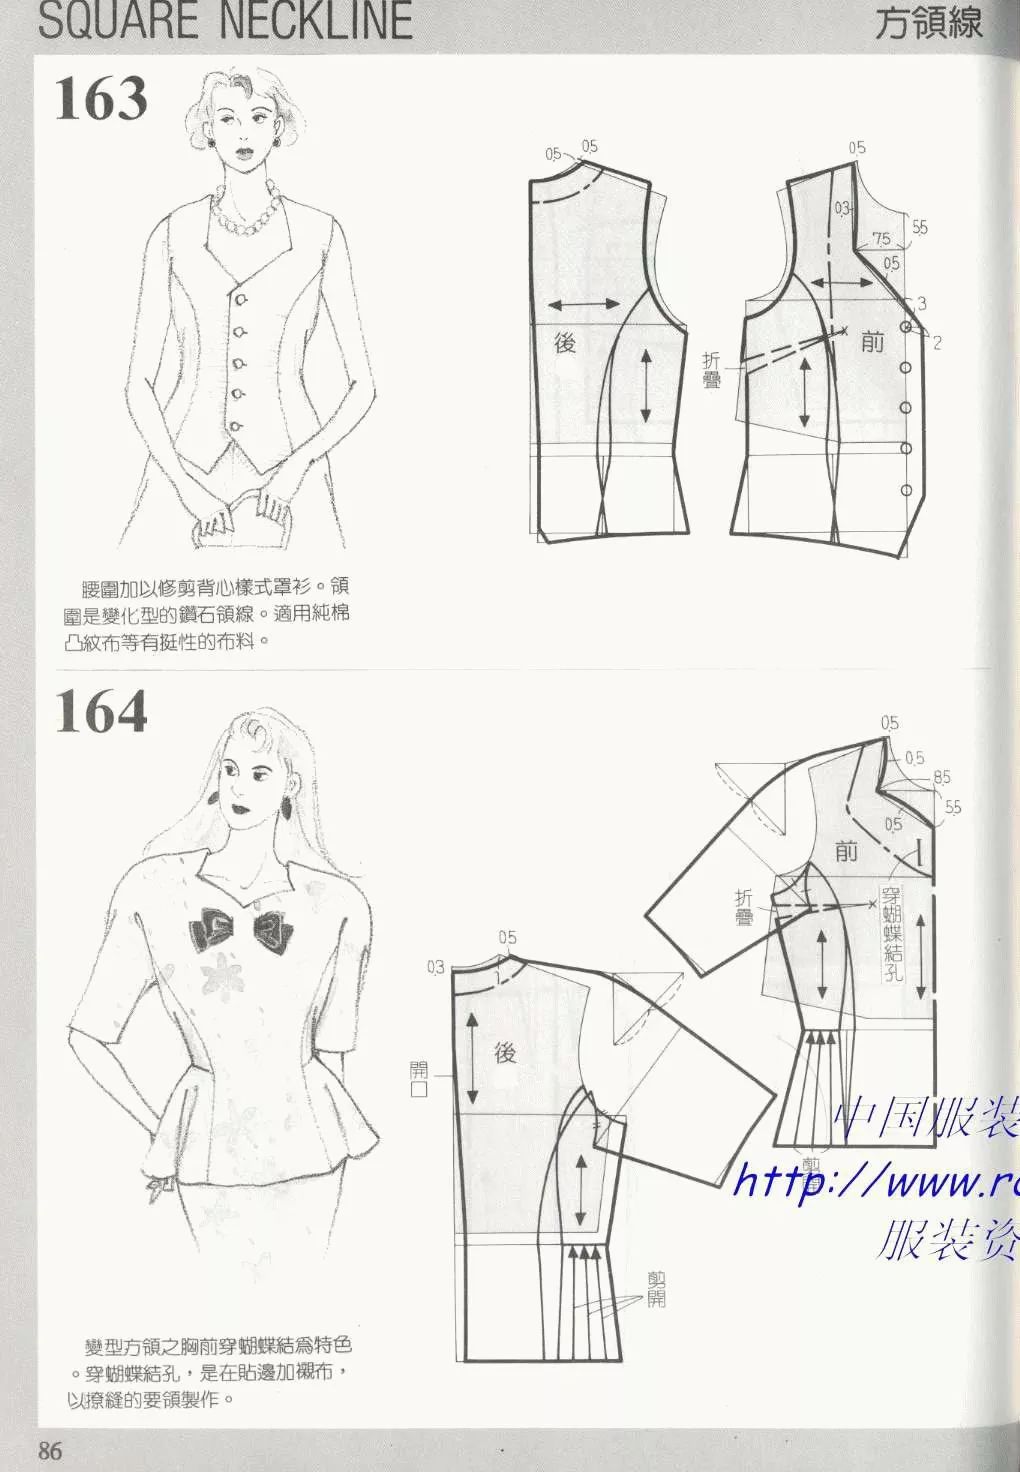 服装制作 | 188种服装衣领的款式及图纸(下)